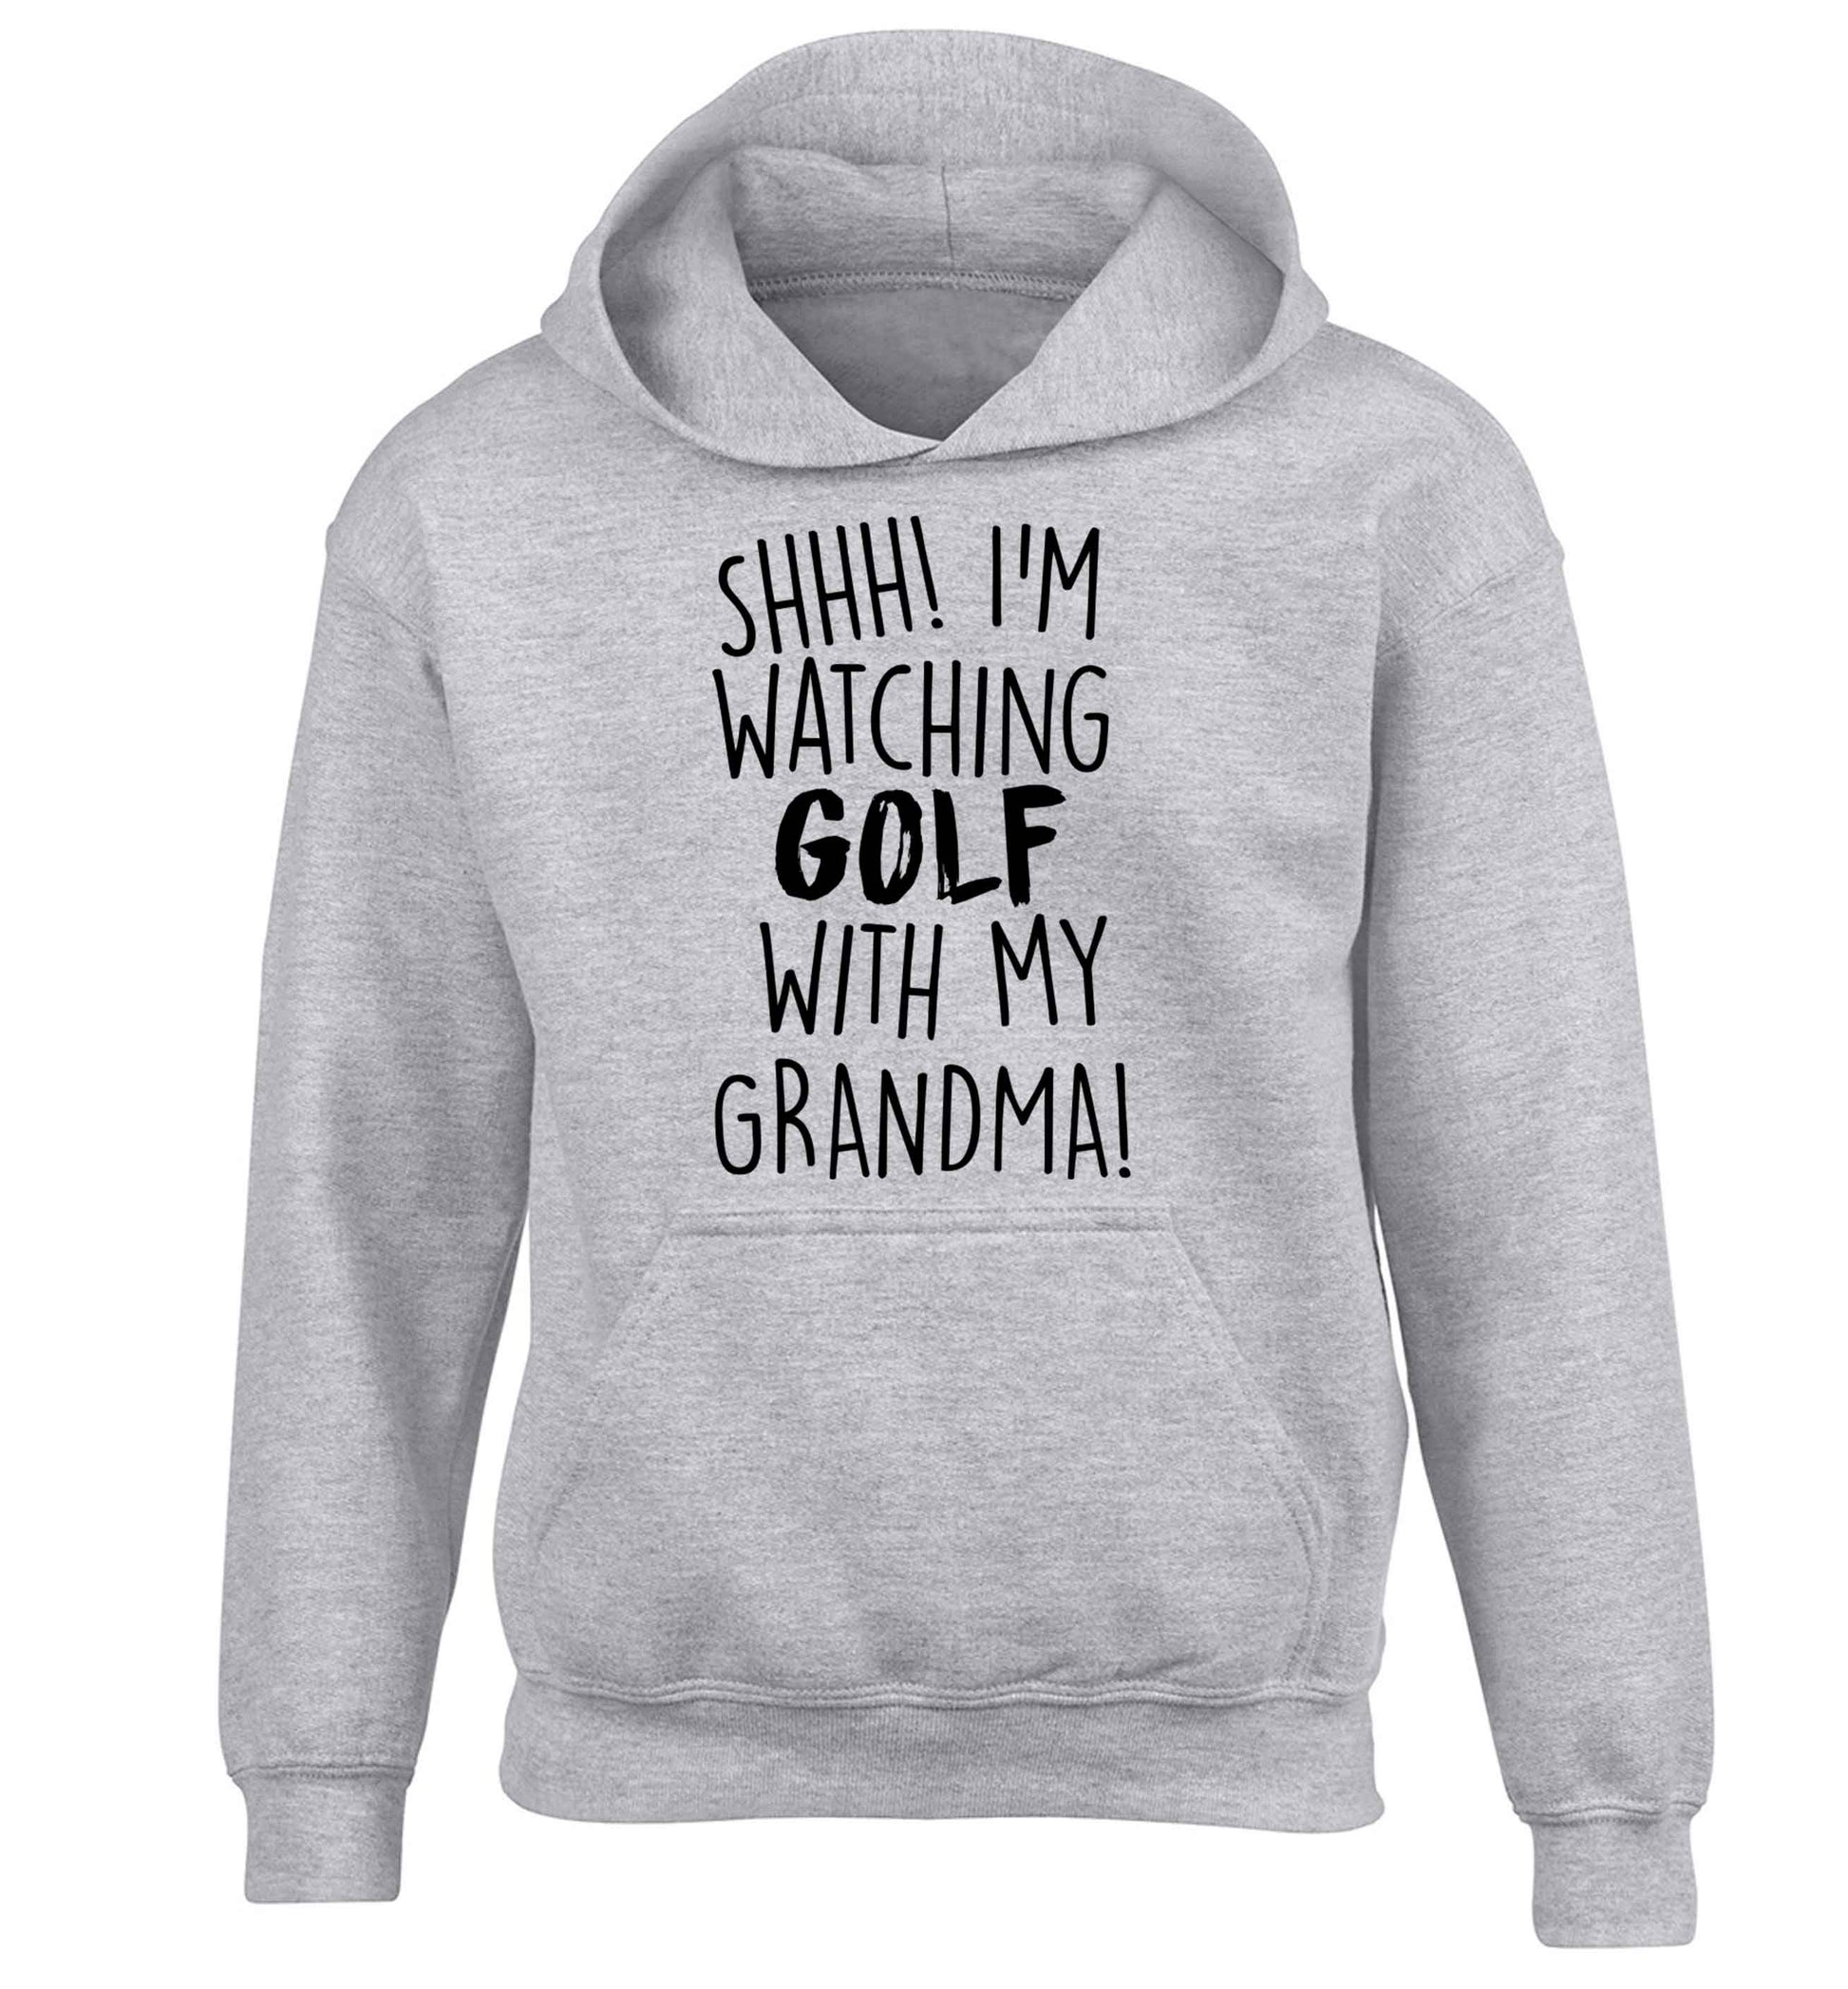 Shh I'm watching golf with my grandma children's grey hoodie 12-13 Years